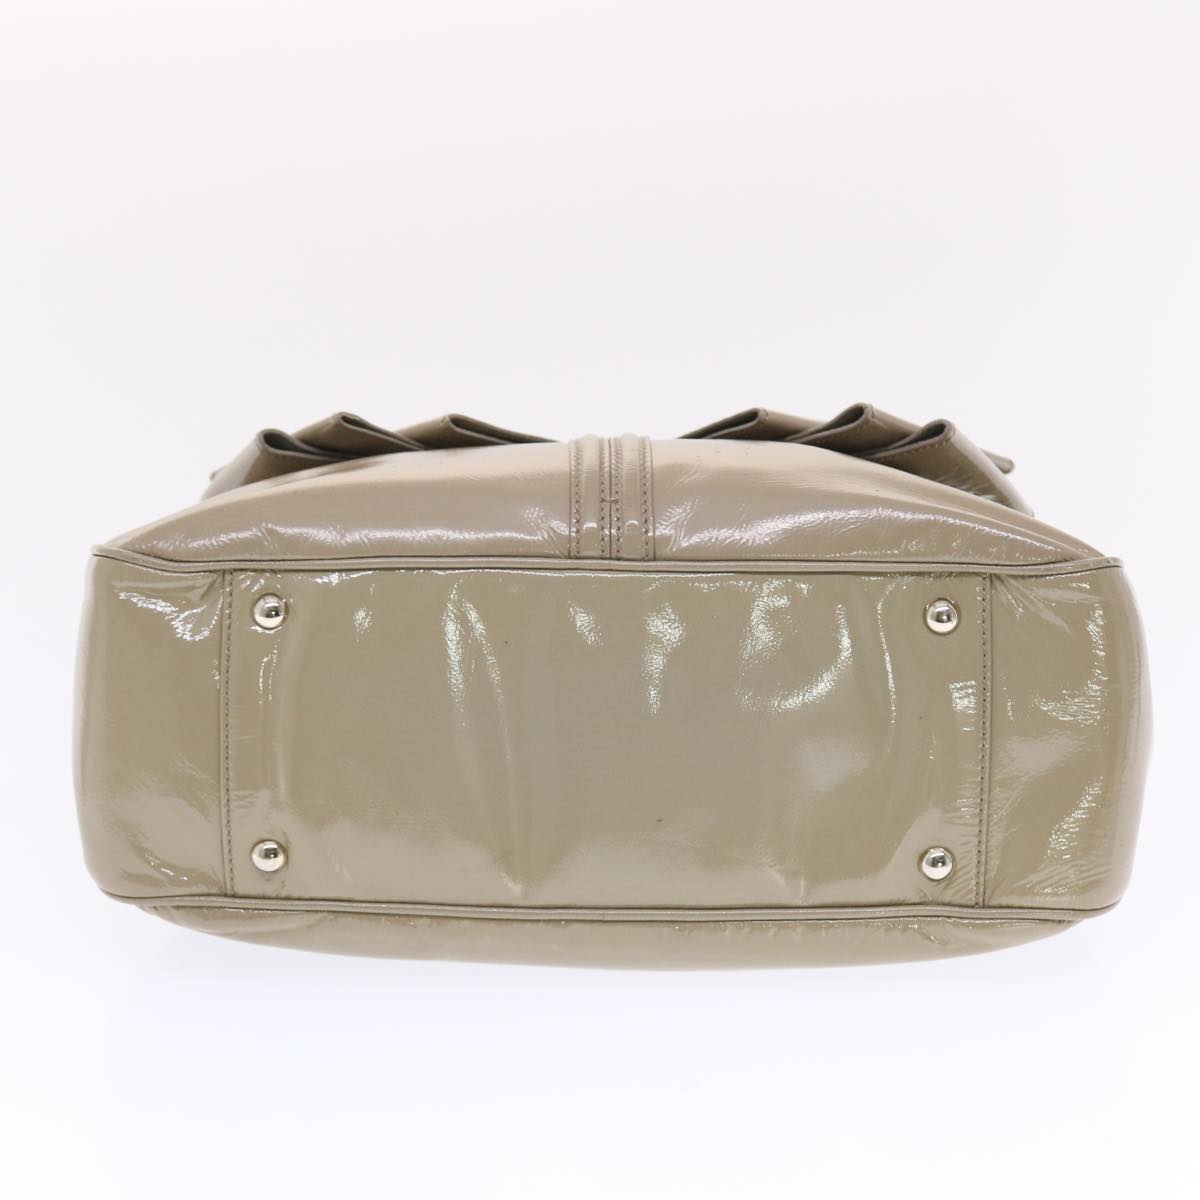 SAINT LAURENT Shoulder Bag Patent leather Gray 220177 Auth bs7159